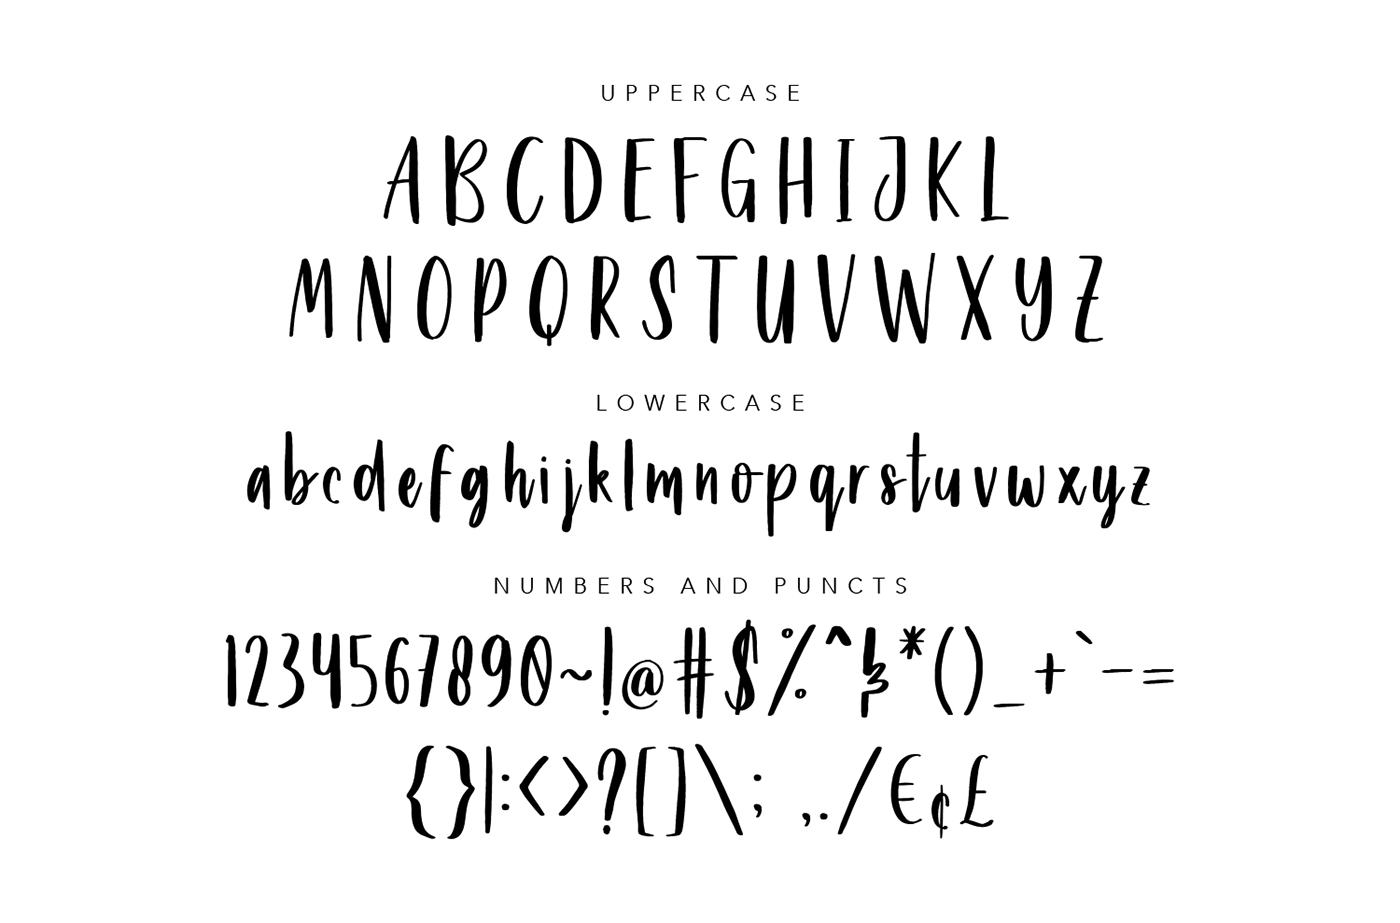 free Free font font fonts download bundle Typeface lettering logo branding 